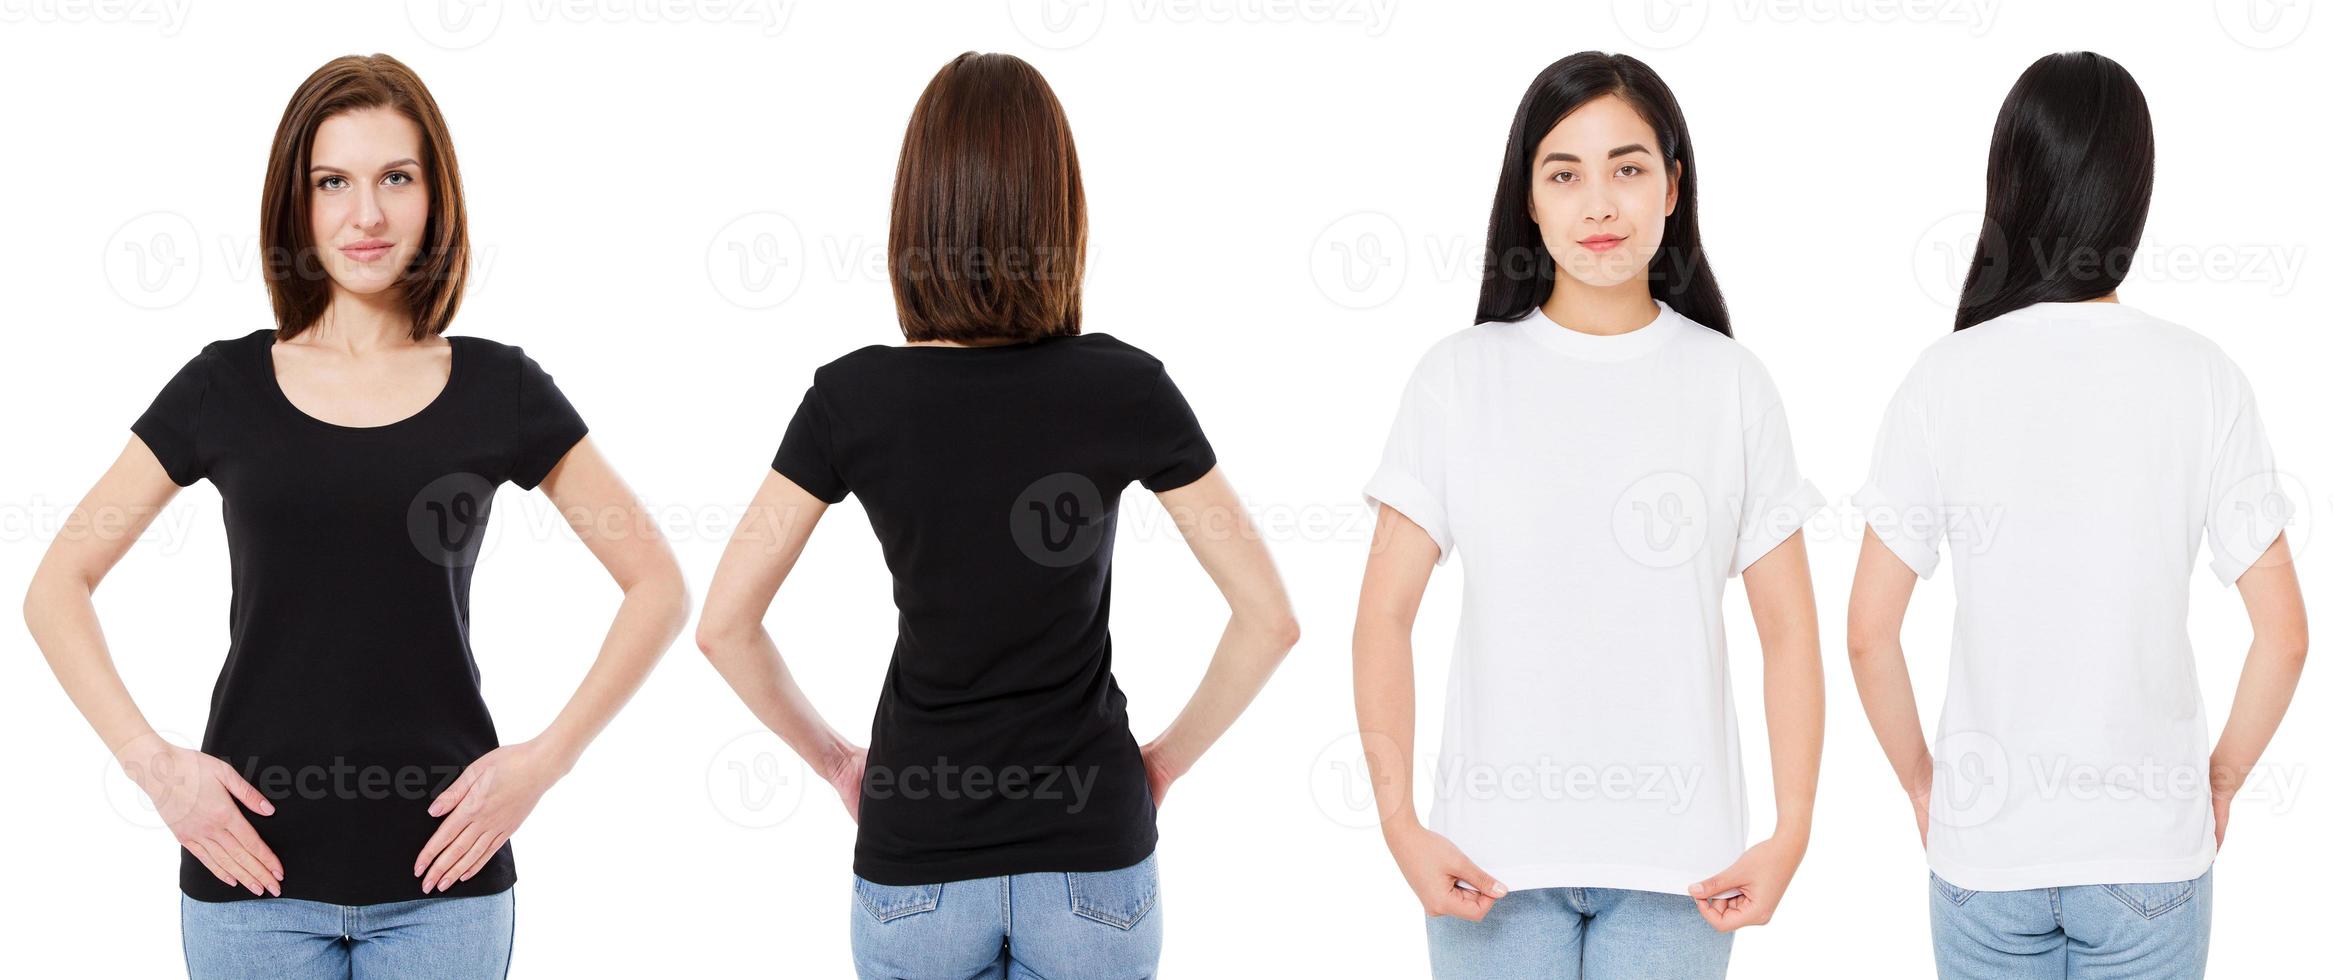 donna coreana e bianca in t-shirt bianca e nera bianca vista anteriore e posteriore, mock up, modello di progettazione foto